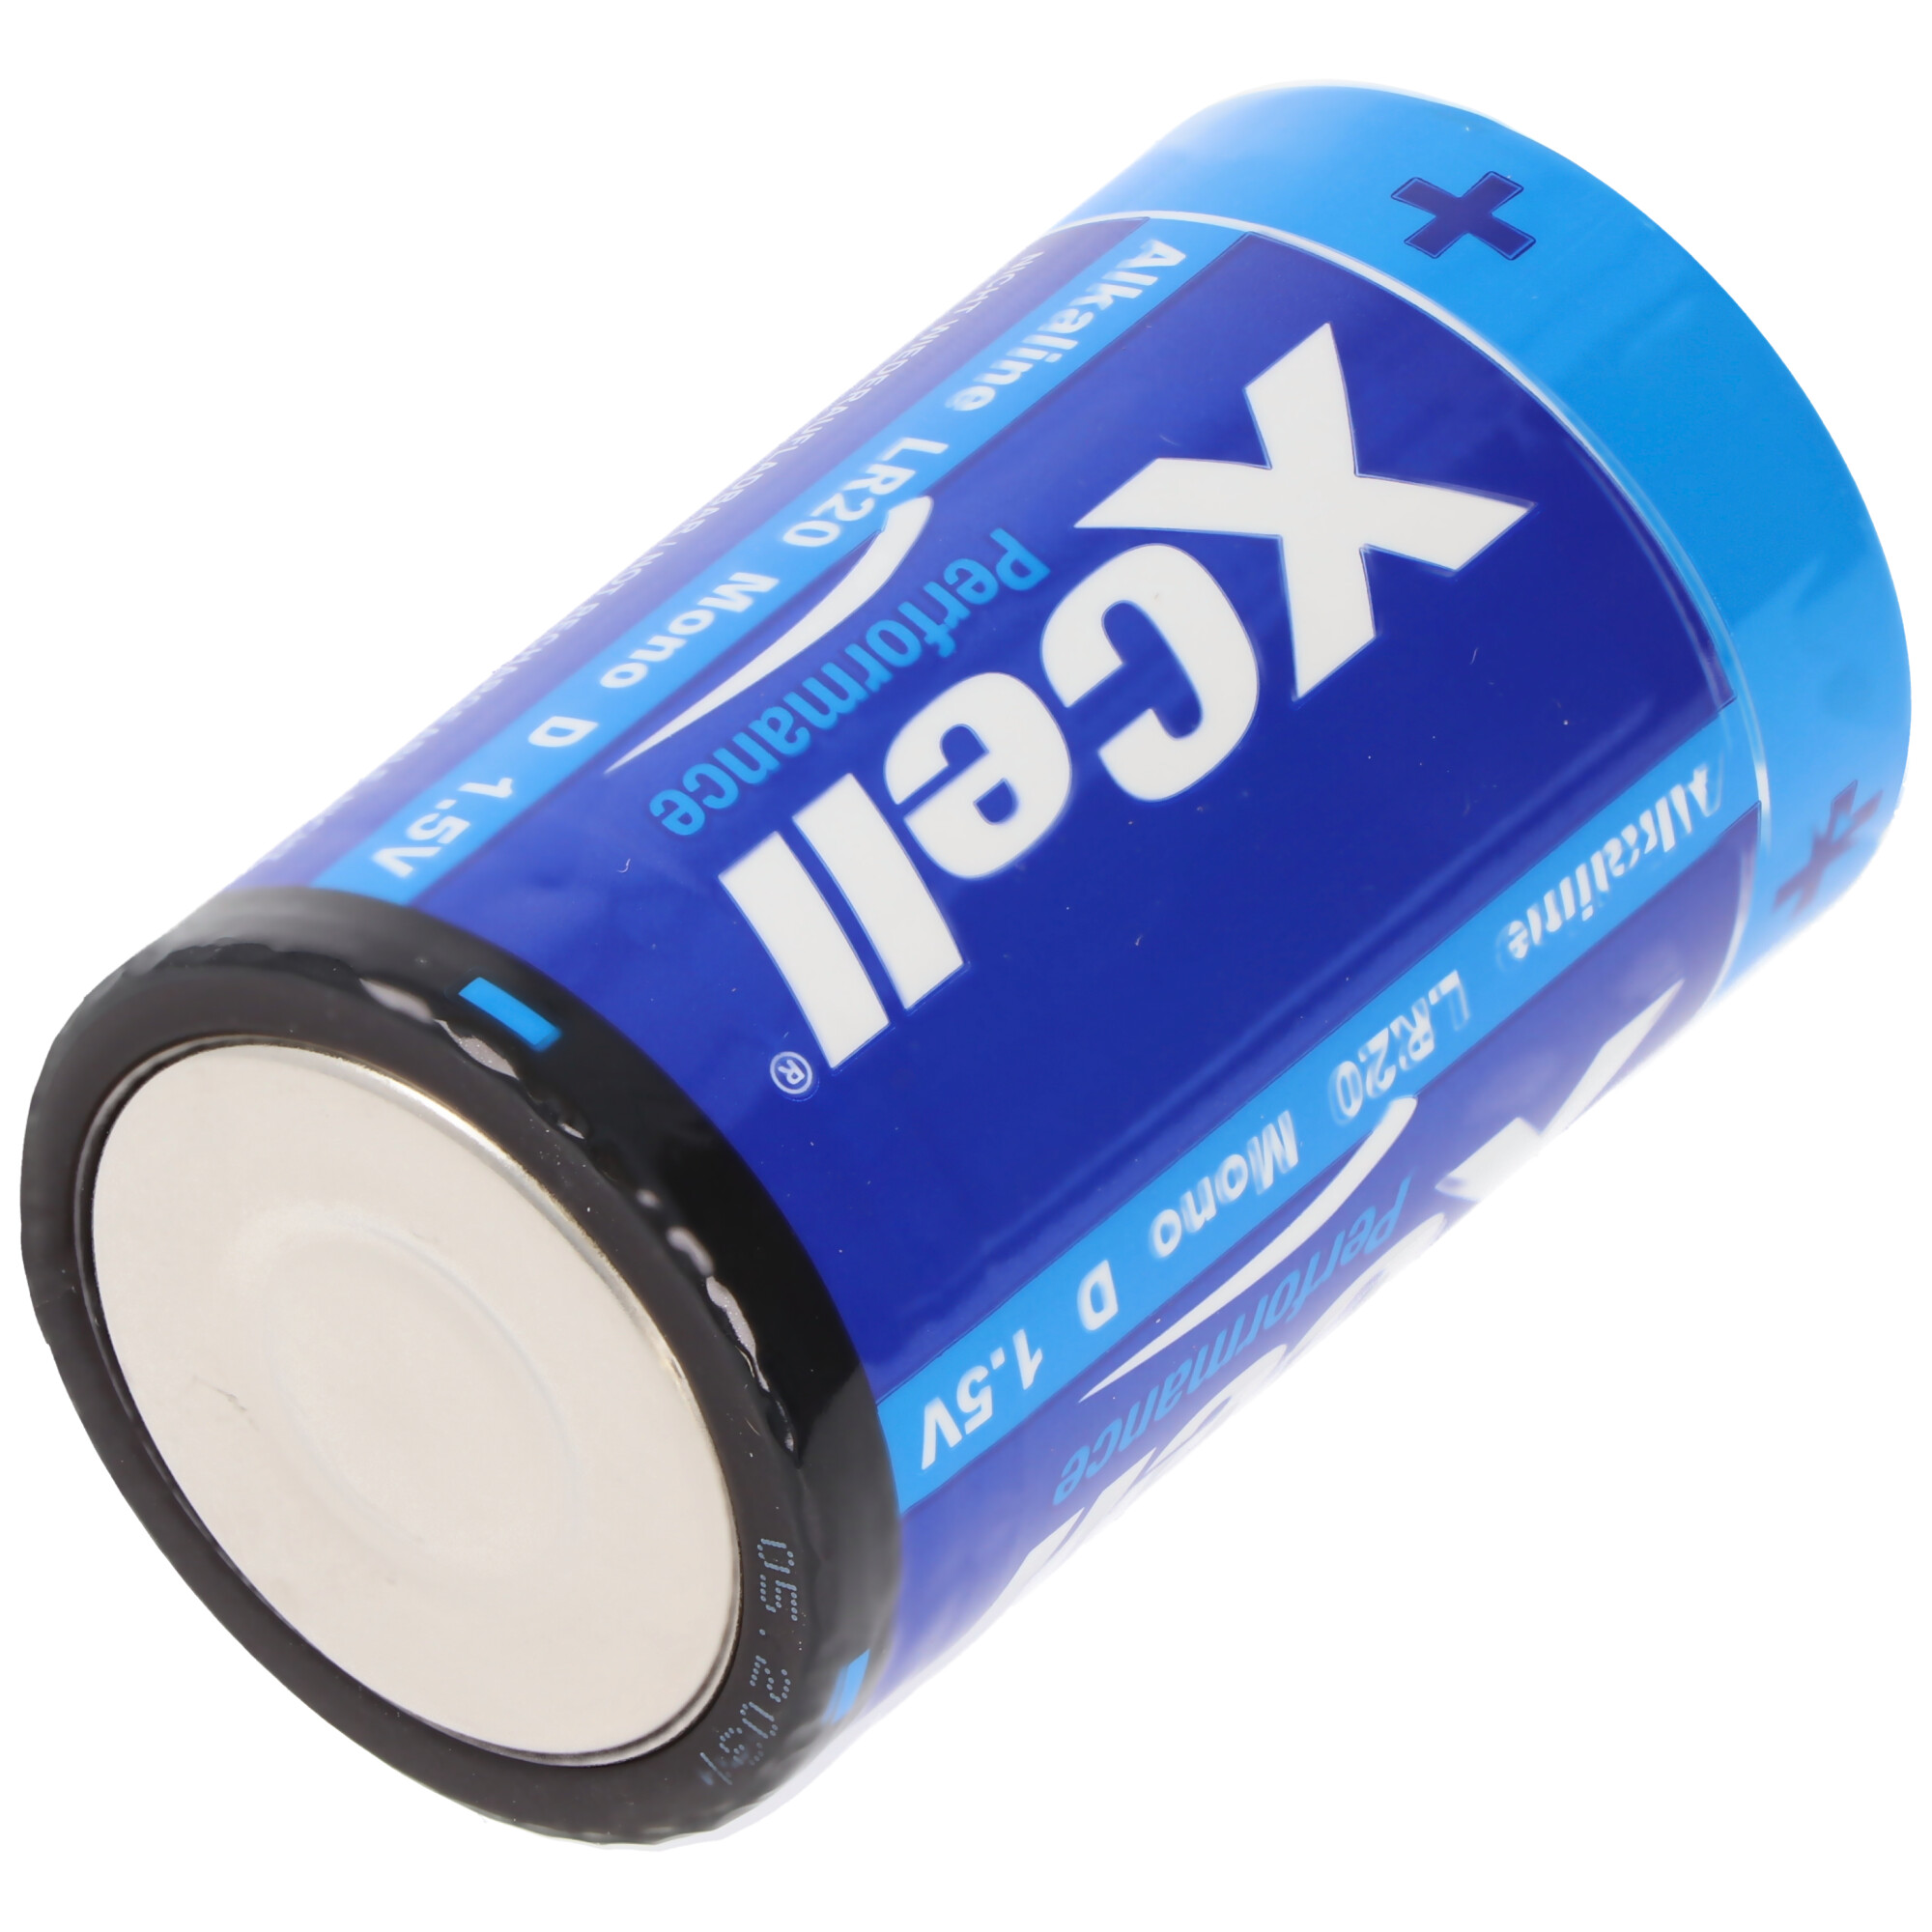 Batterie Alkaline Mono, LR20, D, 61,5x34,2mm, 2er Blister